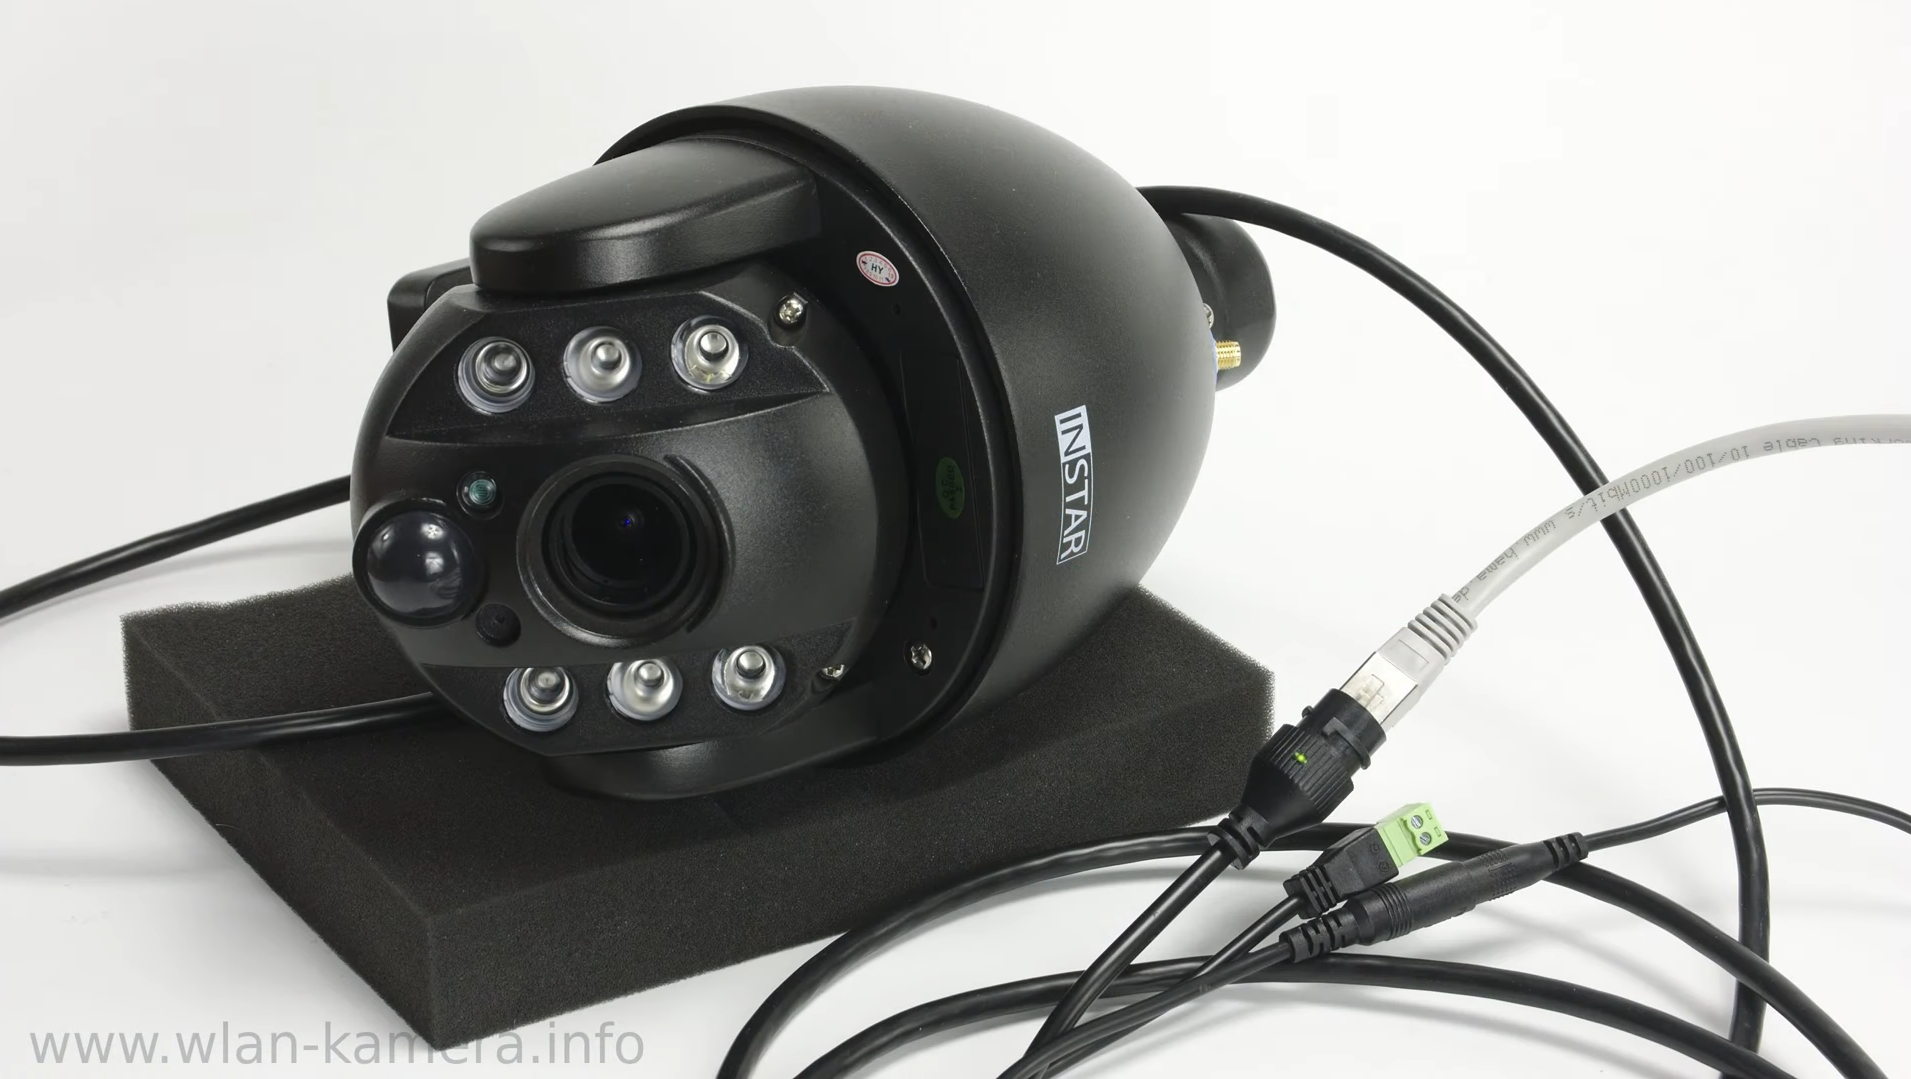 INSTAR IN-9020 Full HD im Test - Überwachungskamera mit Motor - 4x optischem Zoom